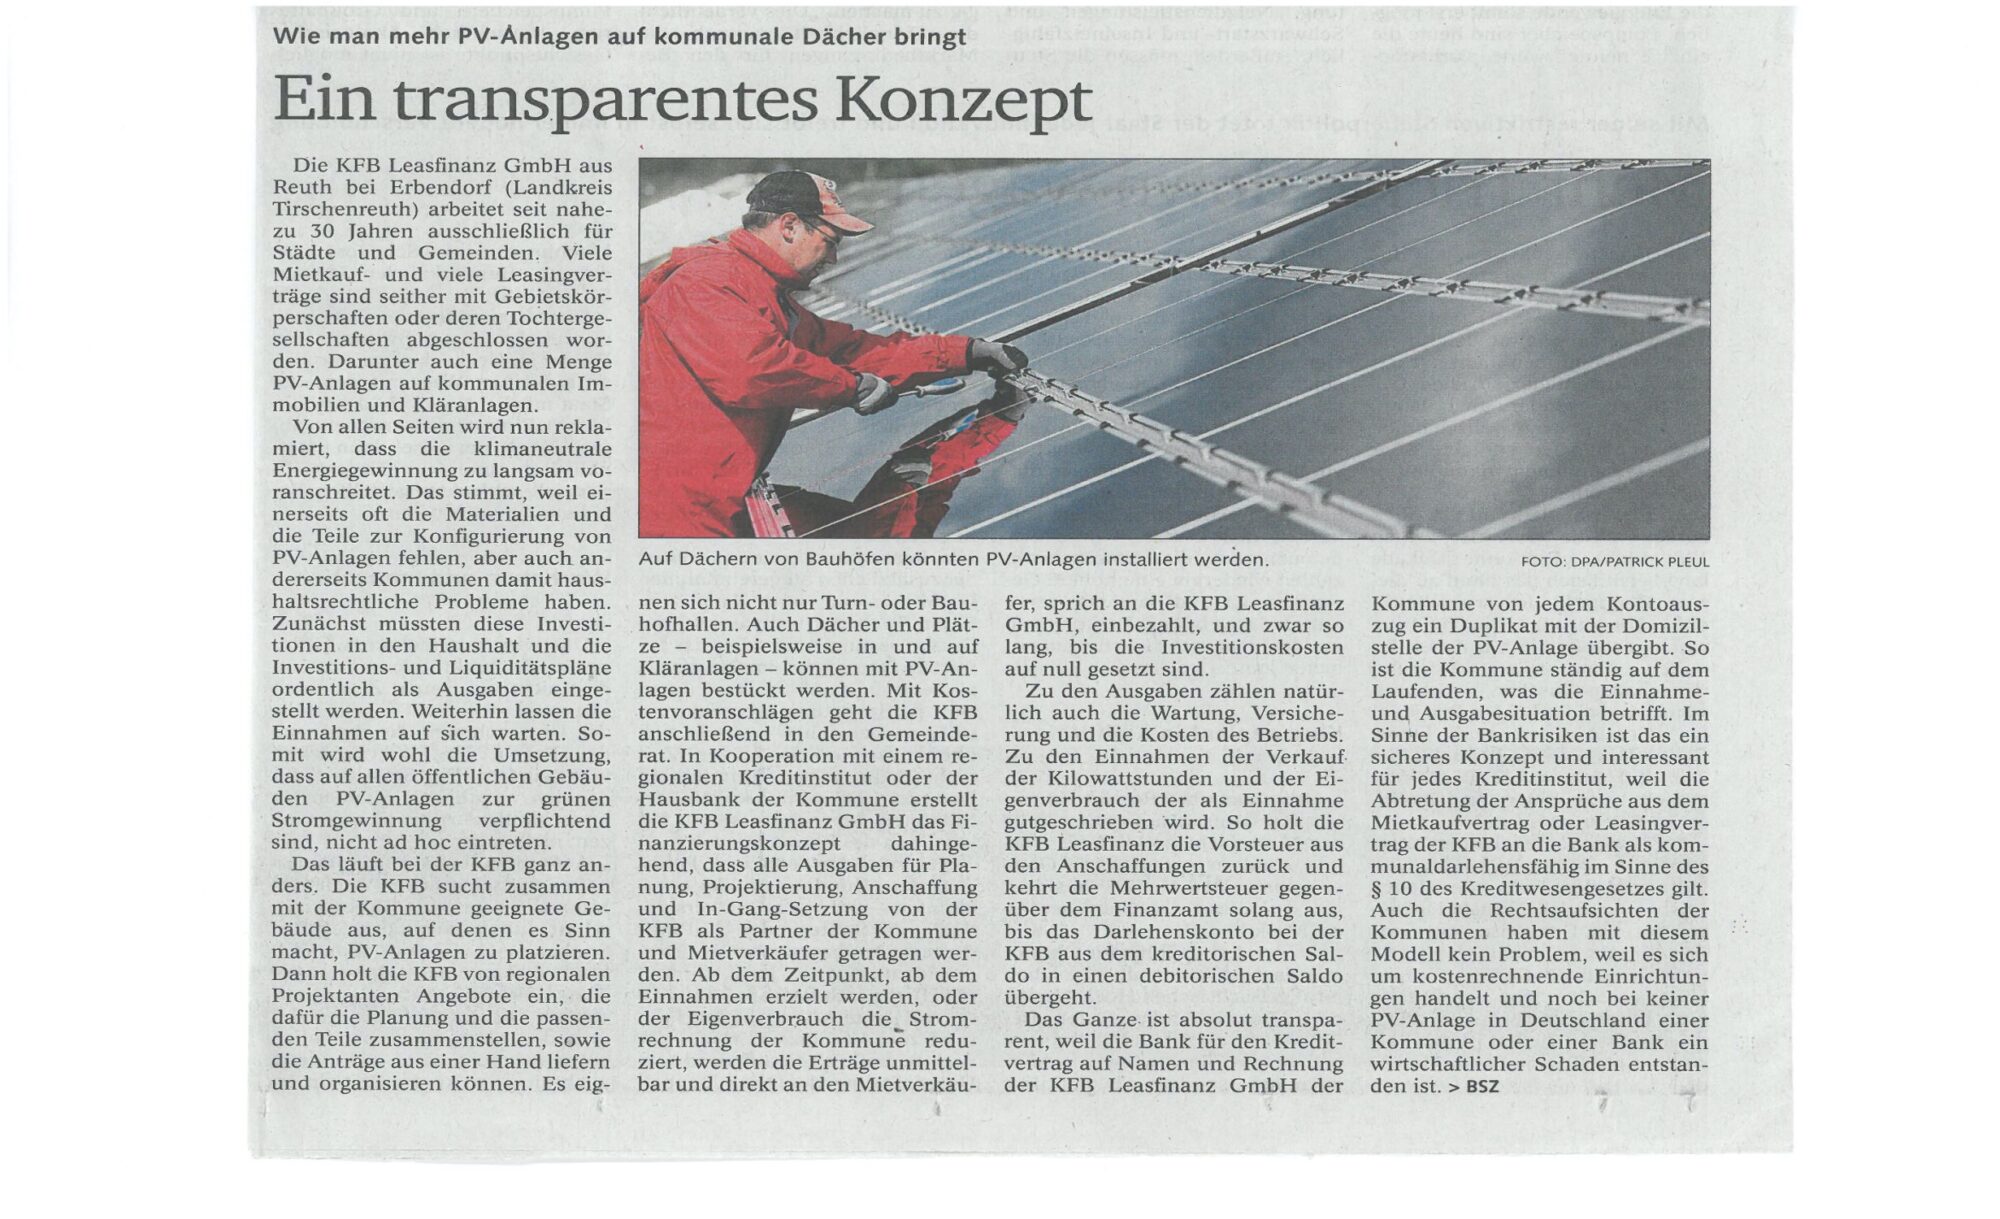 Artikel aus der Bayrischen Staatszeitung vom 2. September 2022 "Wie man mehr PV-Anlagen auf kommunale Dächer bringt" 
Ein transparentes Konzept der KFB Leasfinanz